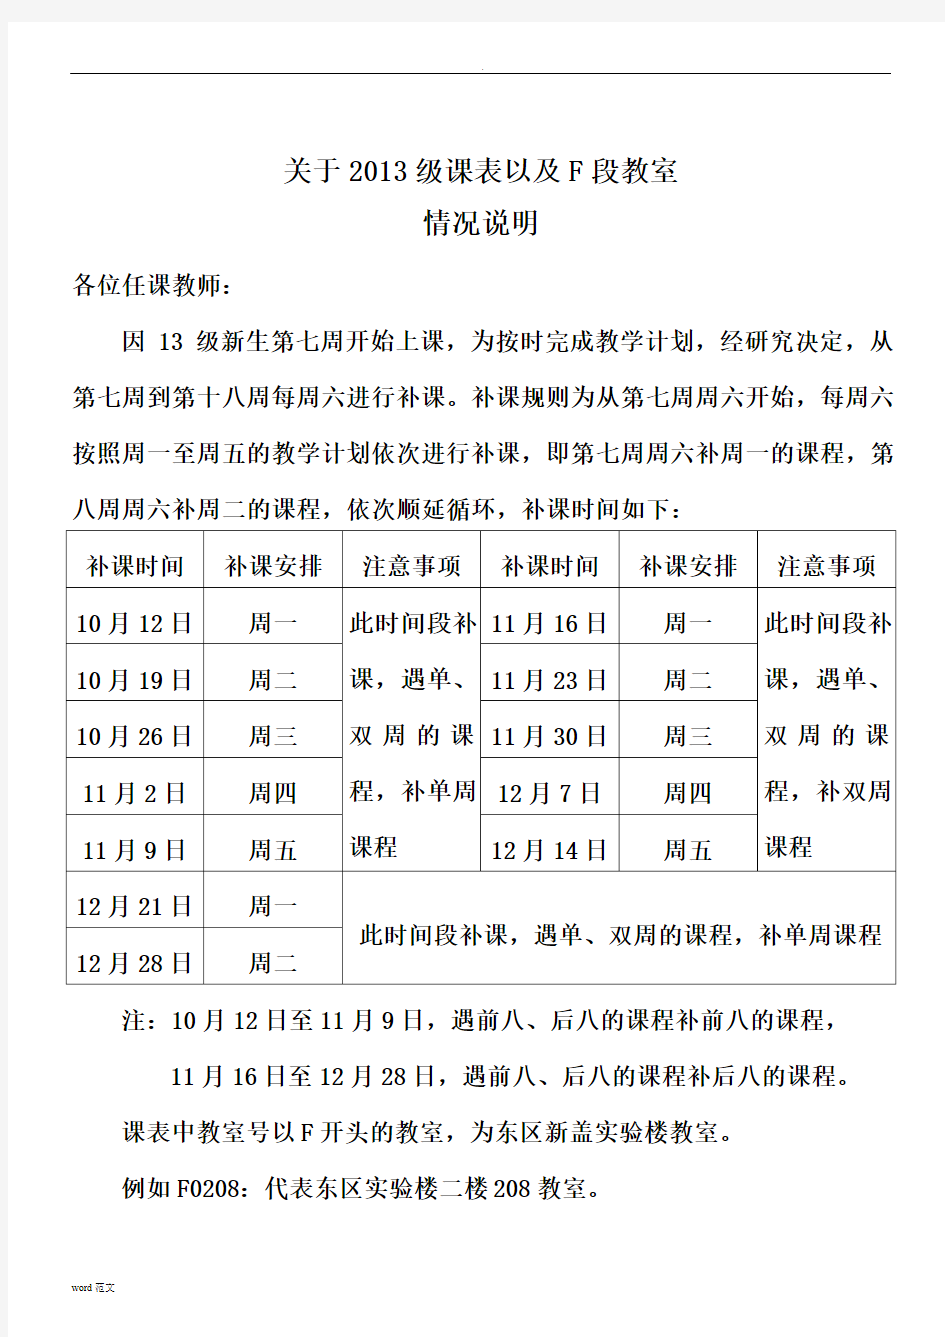 西安邮电大学新校区2013-2014-01学期课表